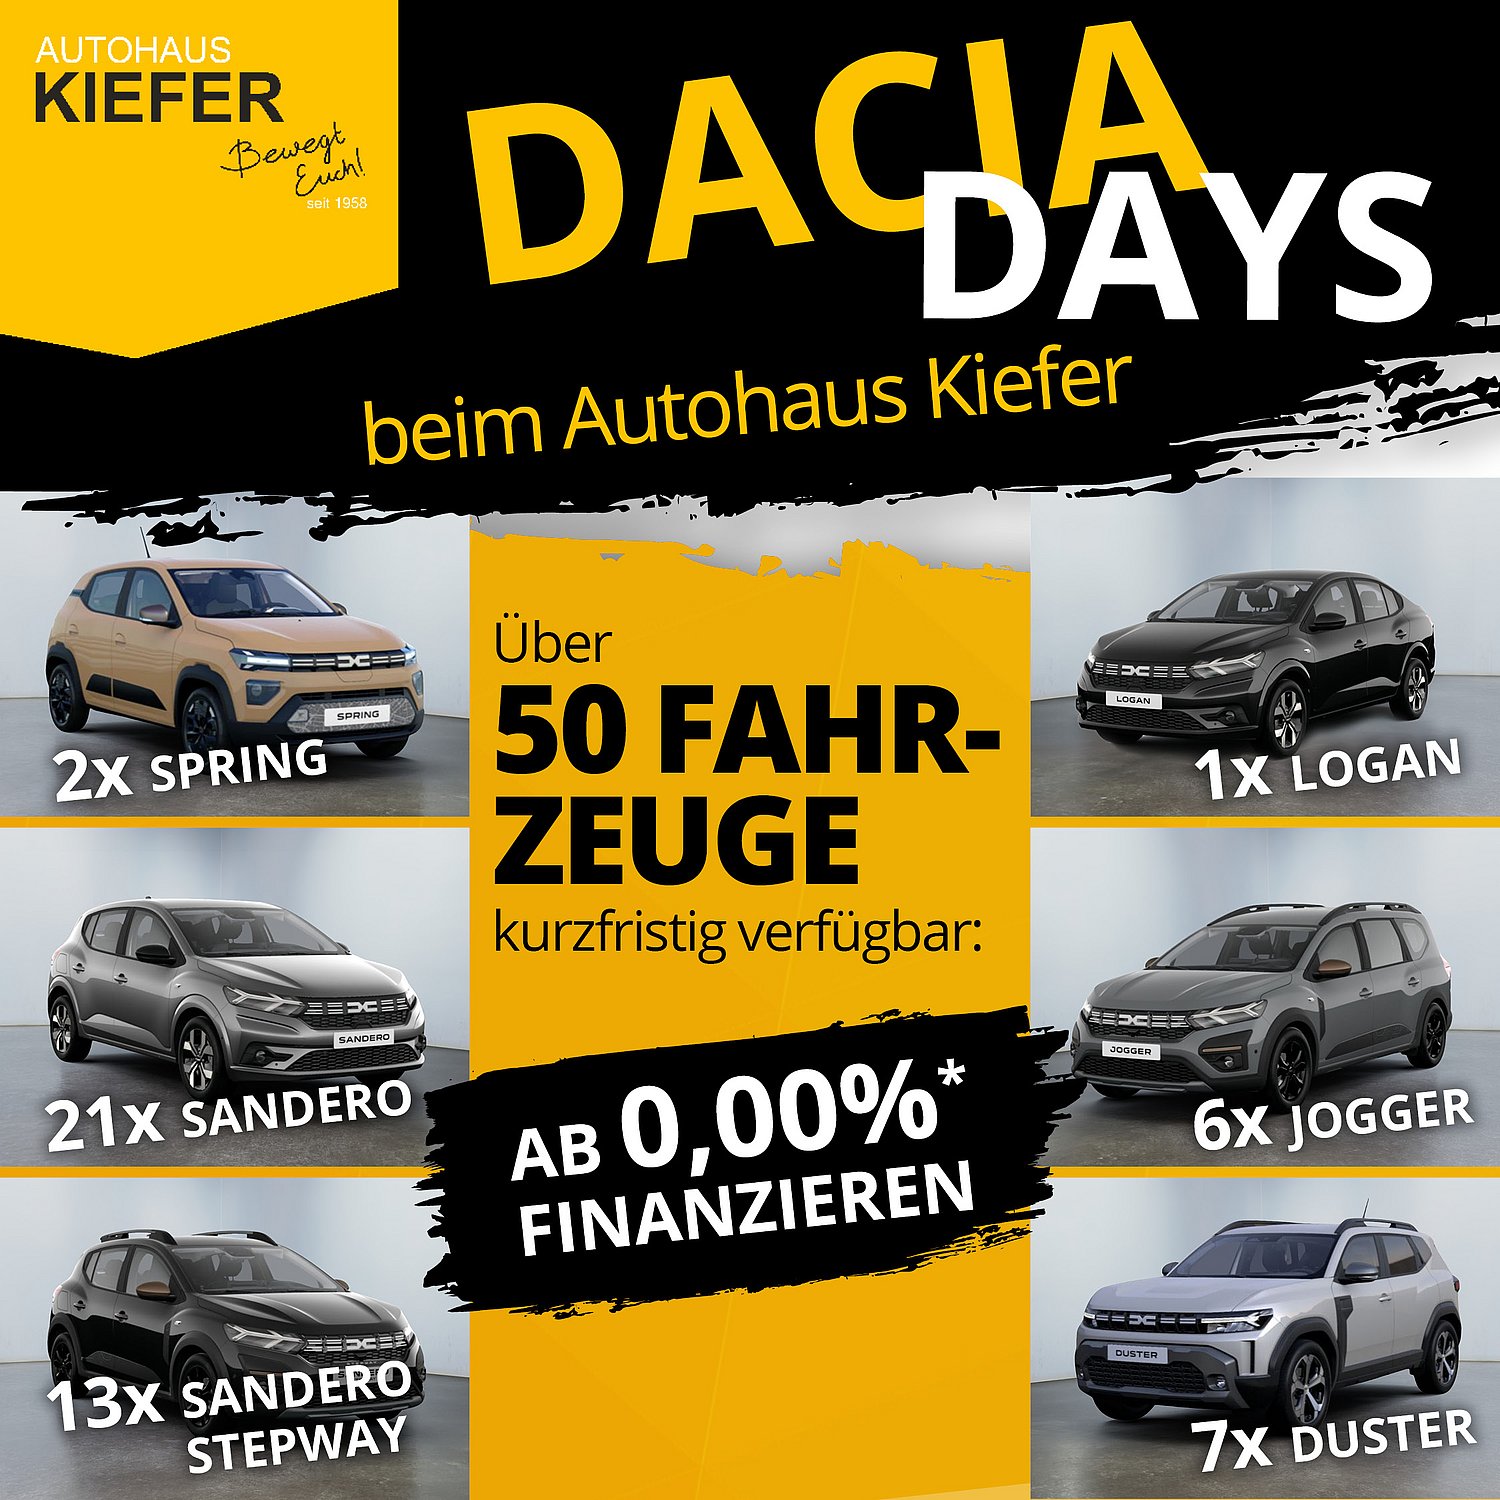 Autohaus Kiefer- Alle Dacia Modelle auf einen Blick